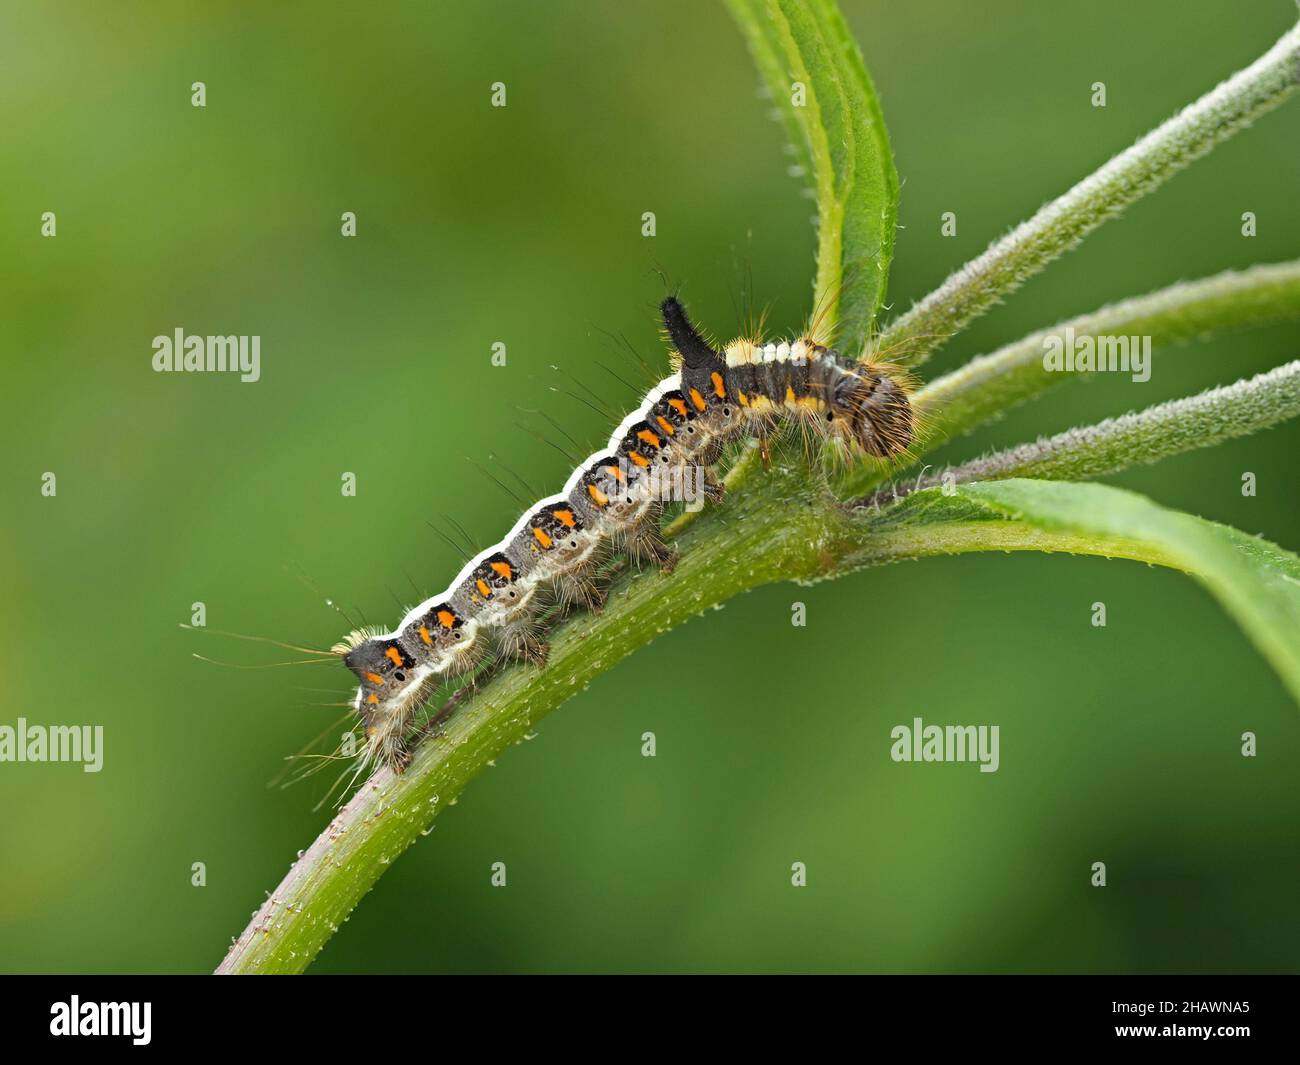 Gros plan détaillé de Grey Dagger Moth caterpillar (Acronicta psi) une larve velue avec des rayures crème distinctives et des taches orange Cumbria, Angleterre, Royaume-Uni Banque D'Images